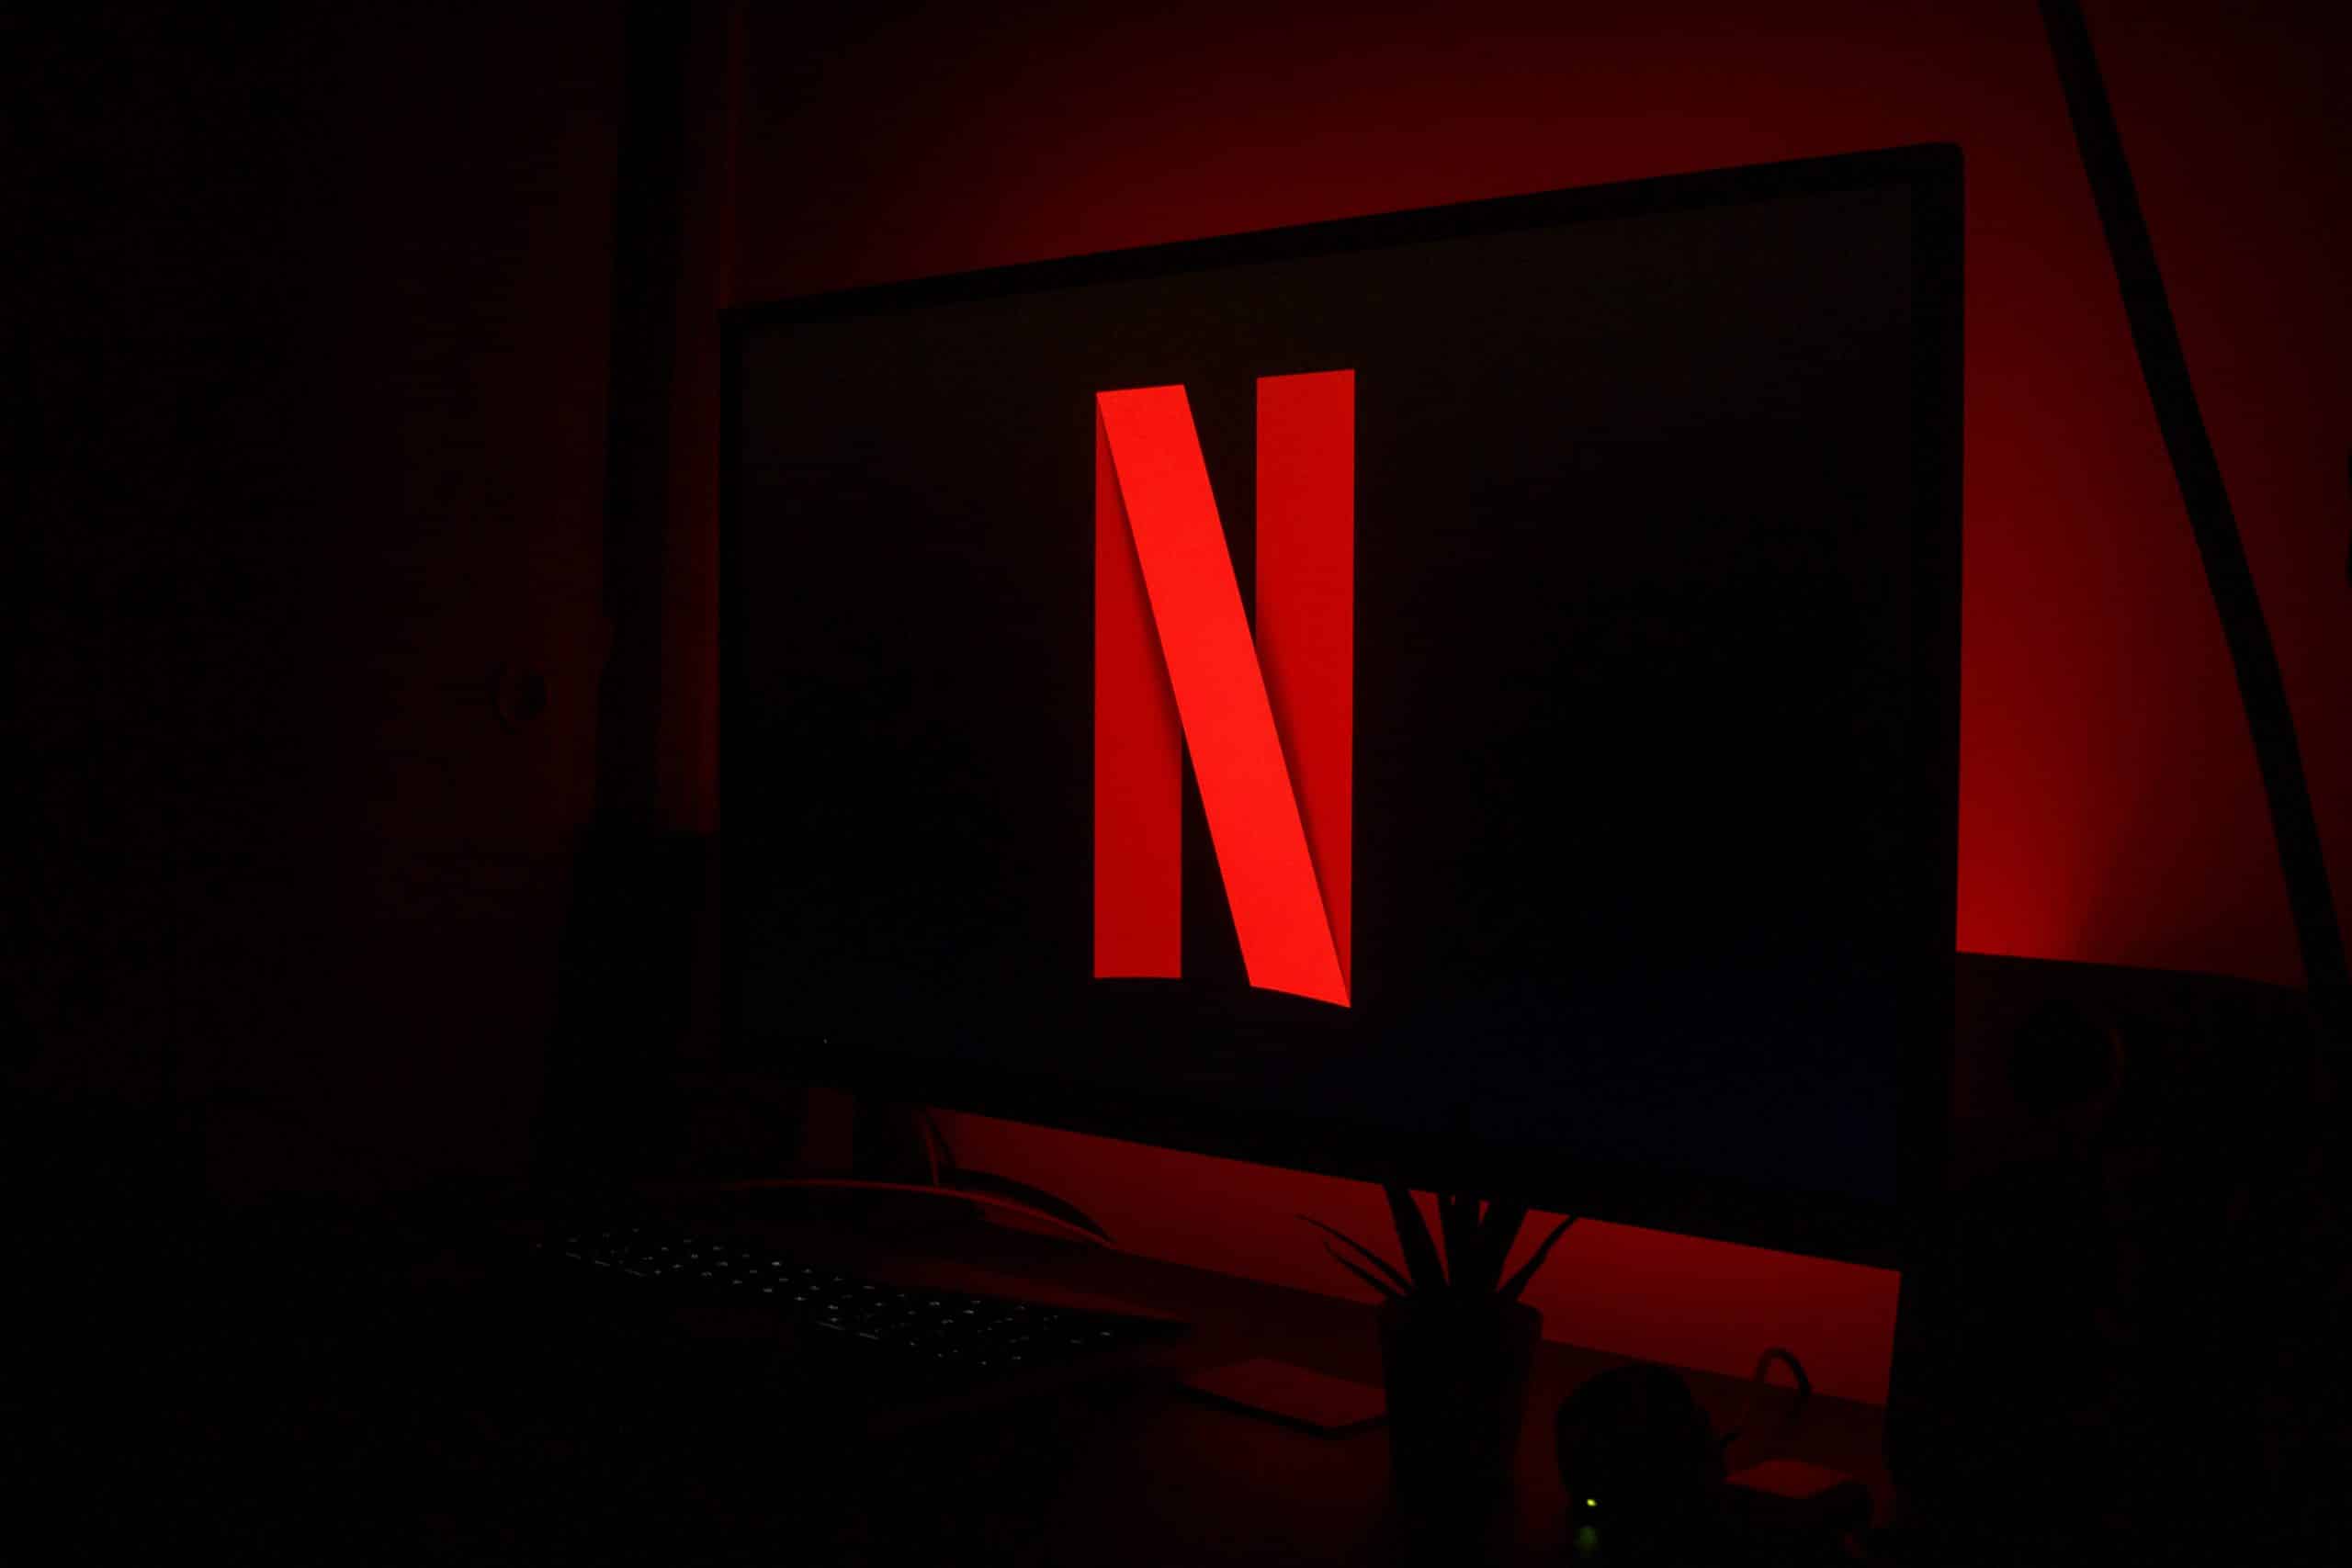 Le logo de Netflix sur une télévision.